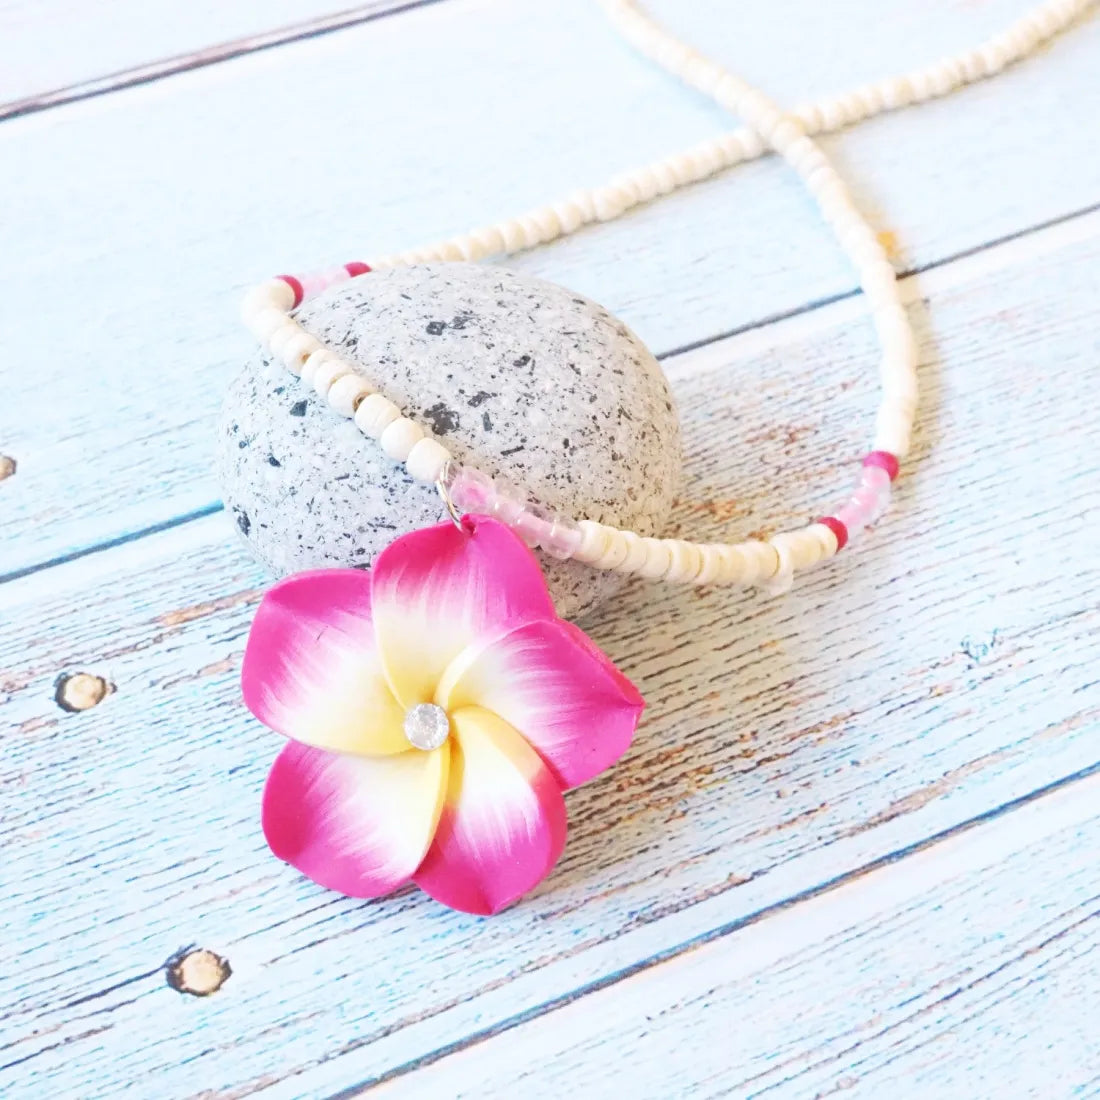 Jazzy Plumeria Pink Pendant Hawaiian Necklace - Made In Hawaii